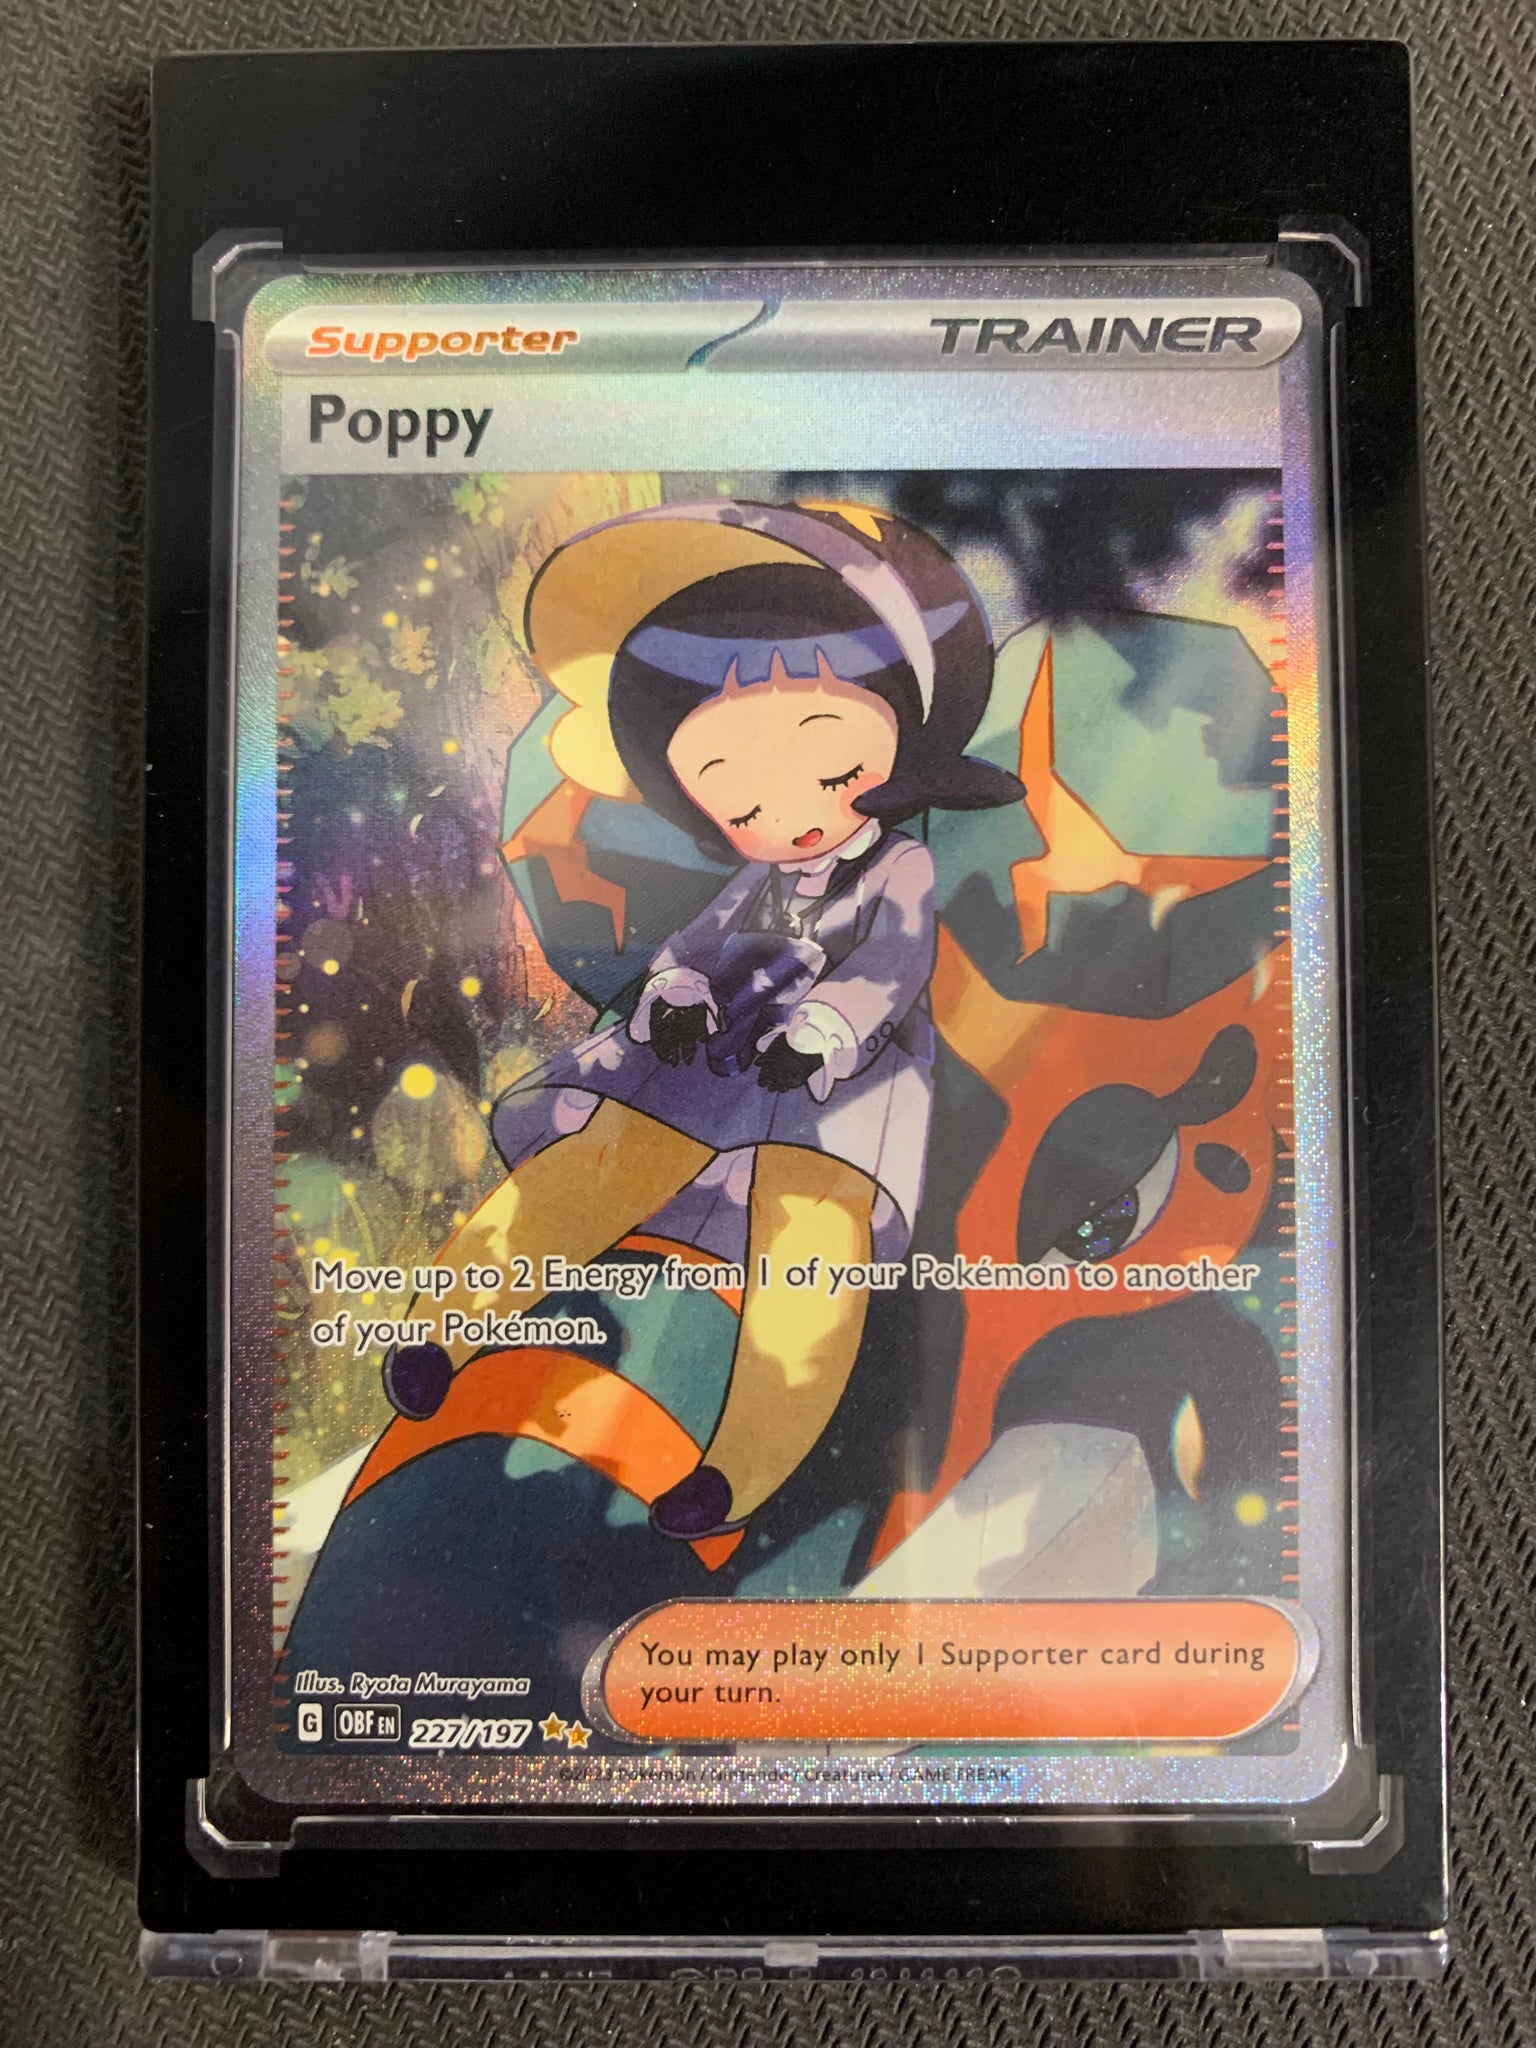 OBSIDIAN FLAMES - Pokémon - Graded Card 2x Poppy - Special Art